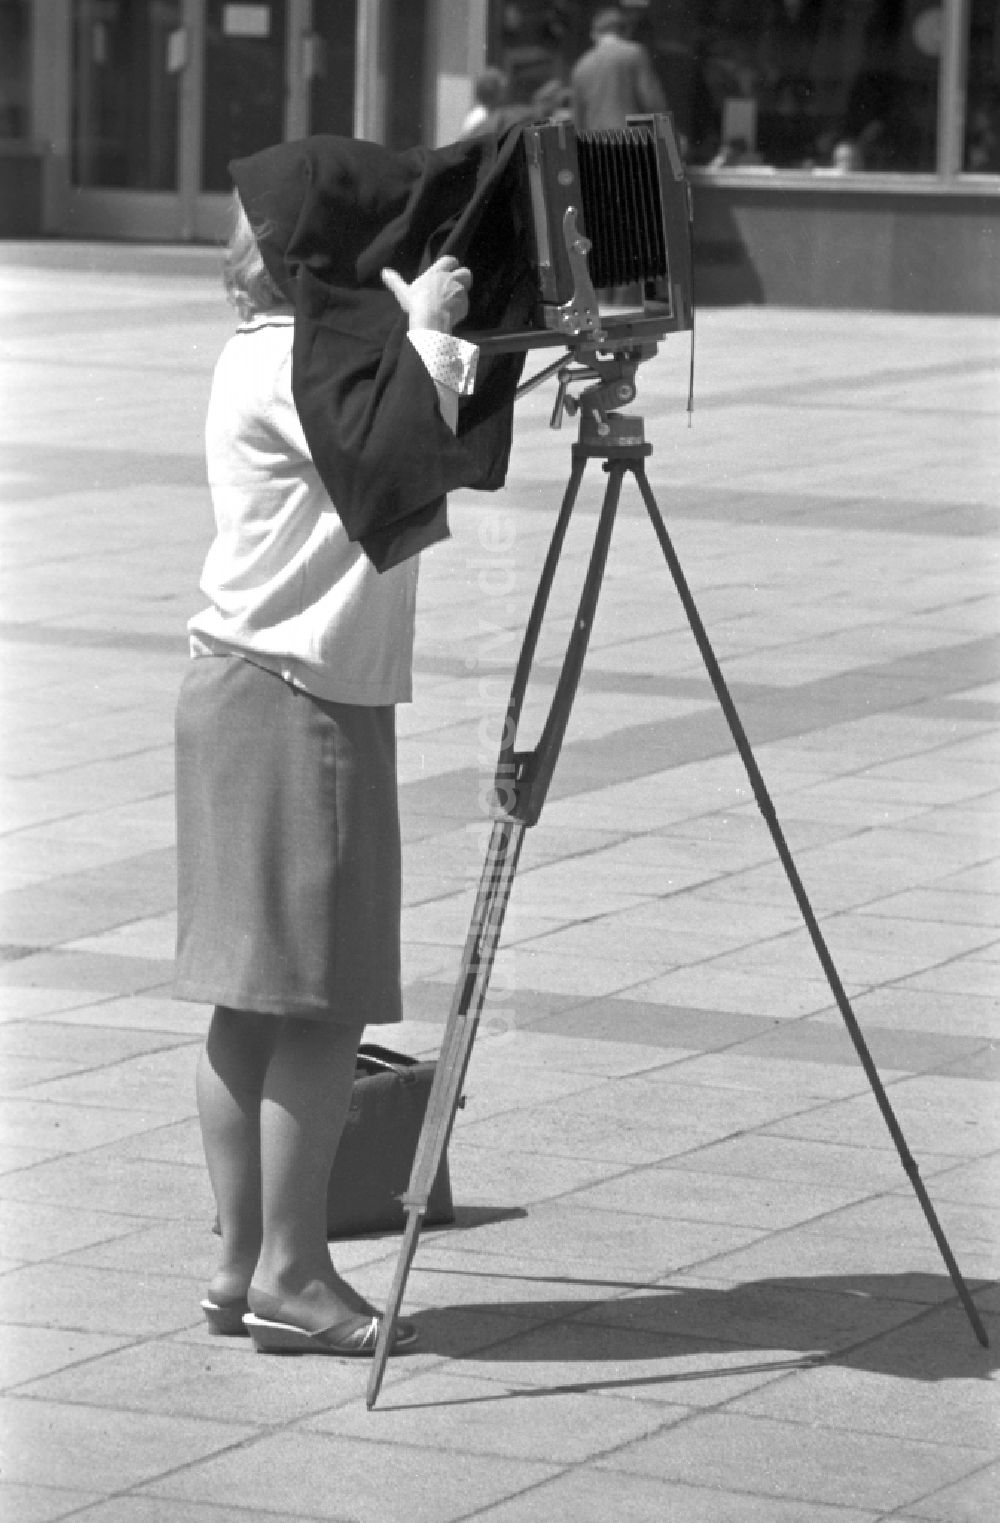 DDR-Fotoarchiv: Magdeburg - Eine Frau fotografiert mit einer Plattenkamera auf einem Holzstativ in Magdeburg